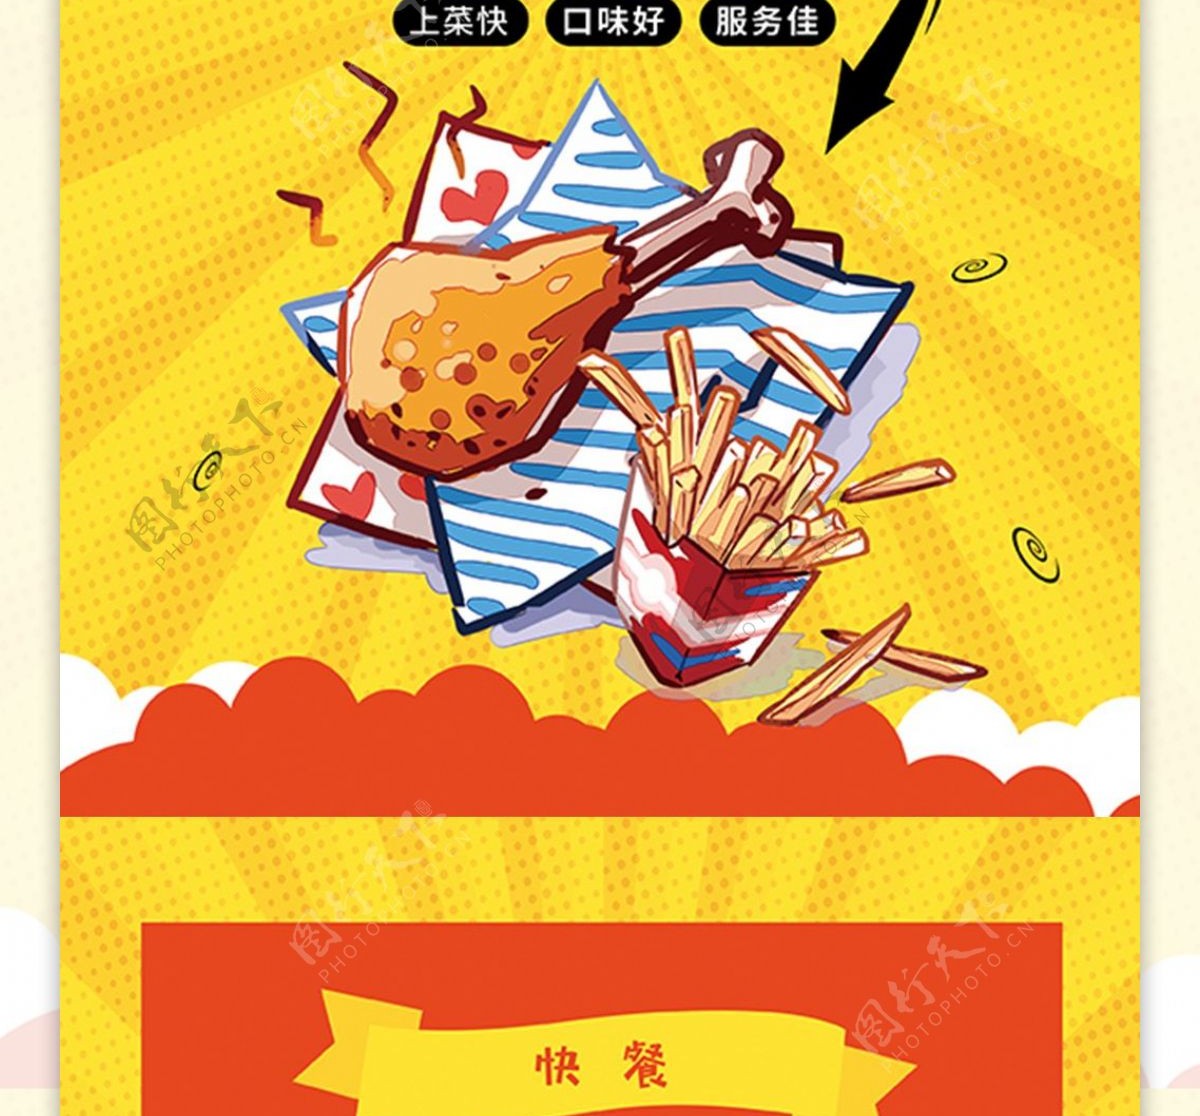 卡通风秘制炸鸡快餐菜单宣传单页